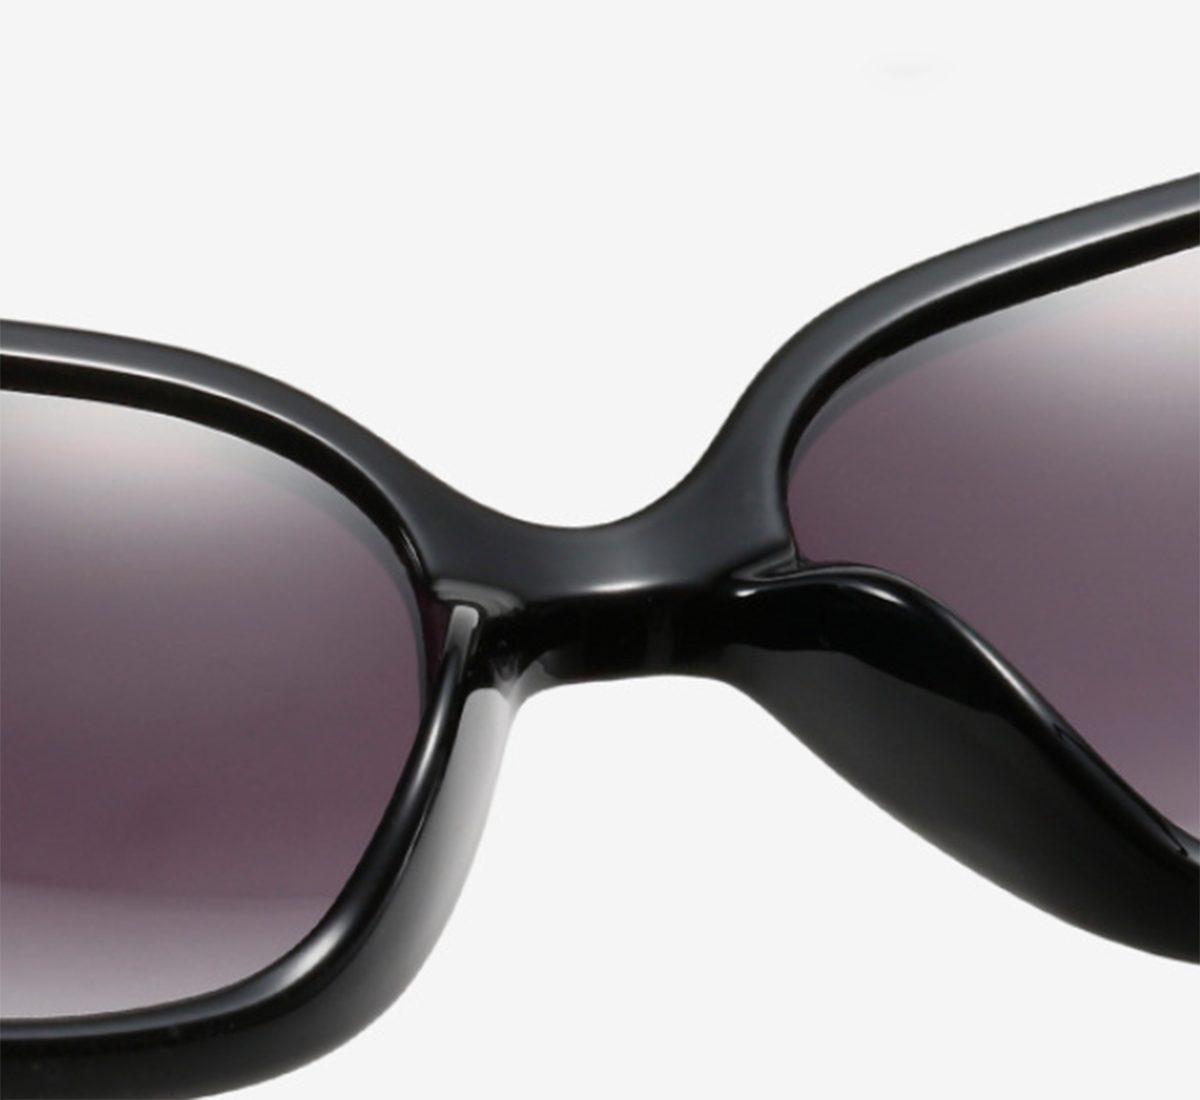 Sonnenbrille für Damen-Polarisiert UV400 im Unisex Haiaveng Rechteckige Retro Sonnenbrille Vintage Damen Sonnenbrille